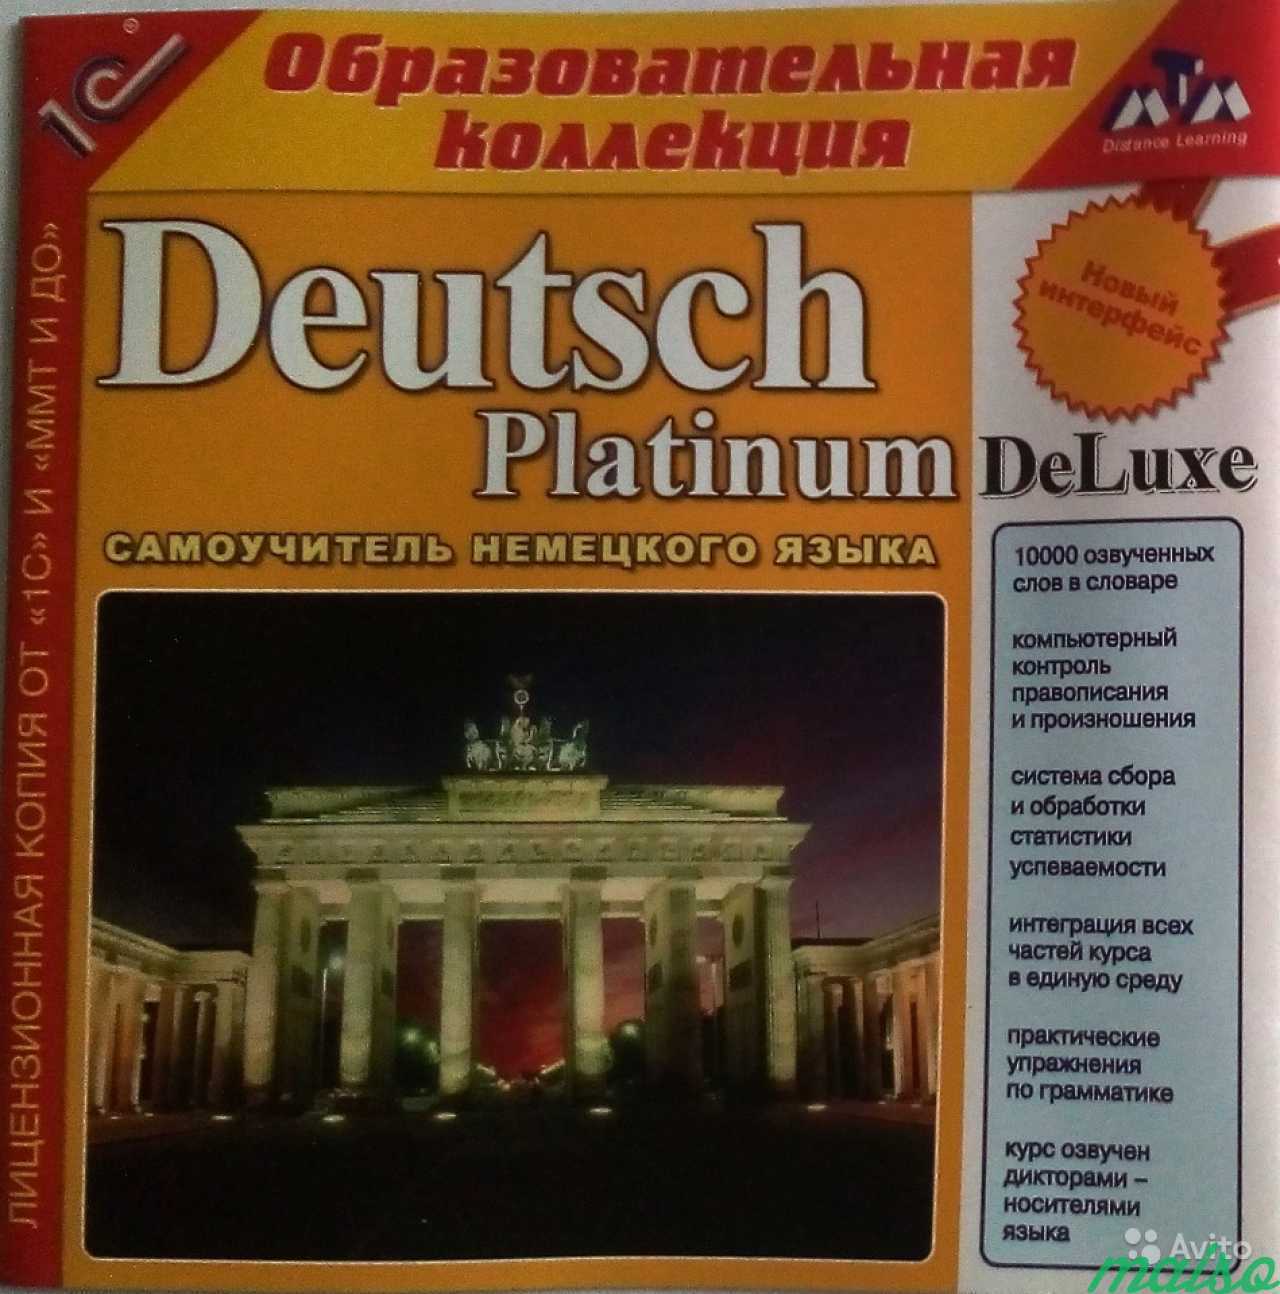 English deluxe platinum. Аудио учитель немецкого языка. Francais Platinum Deluxe. English Platinum Deluxe.